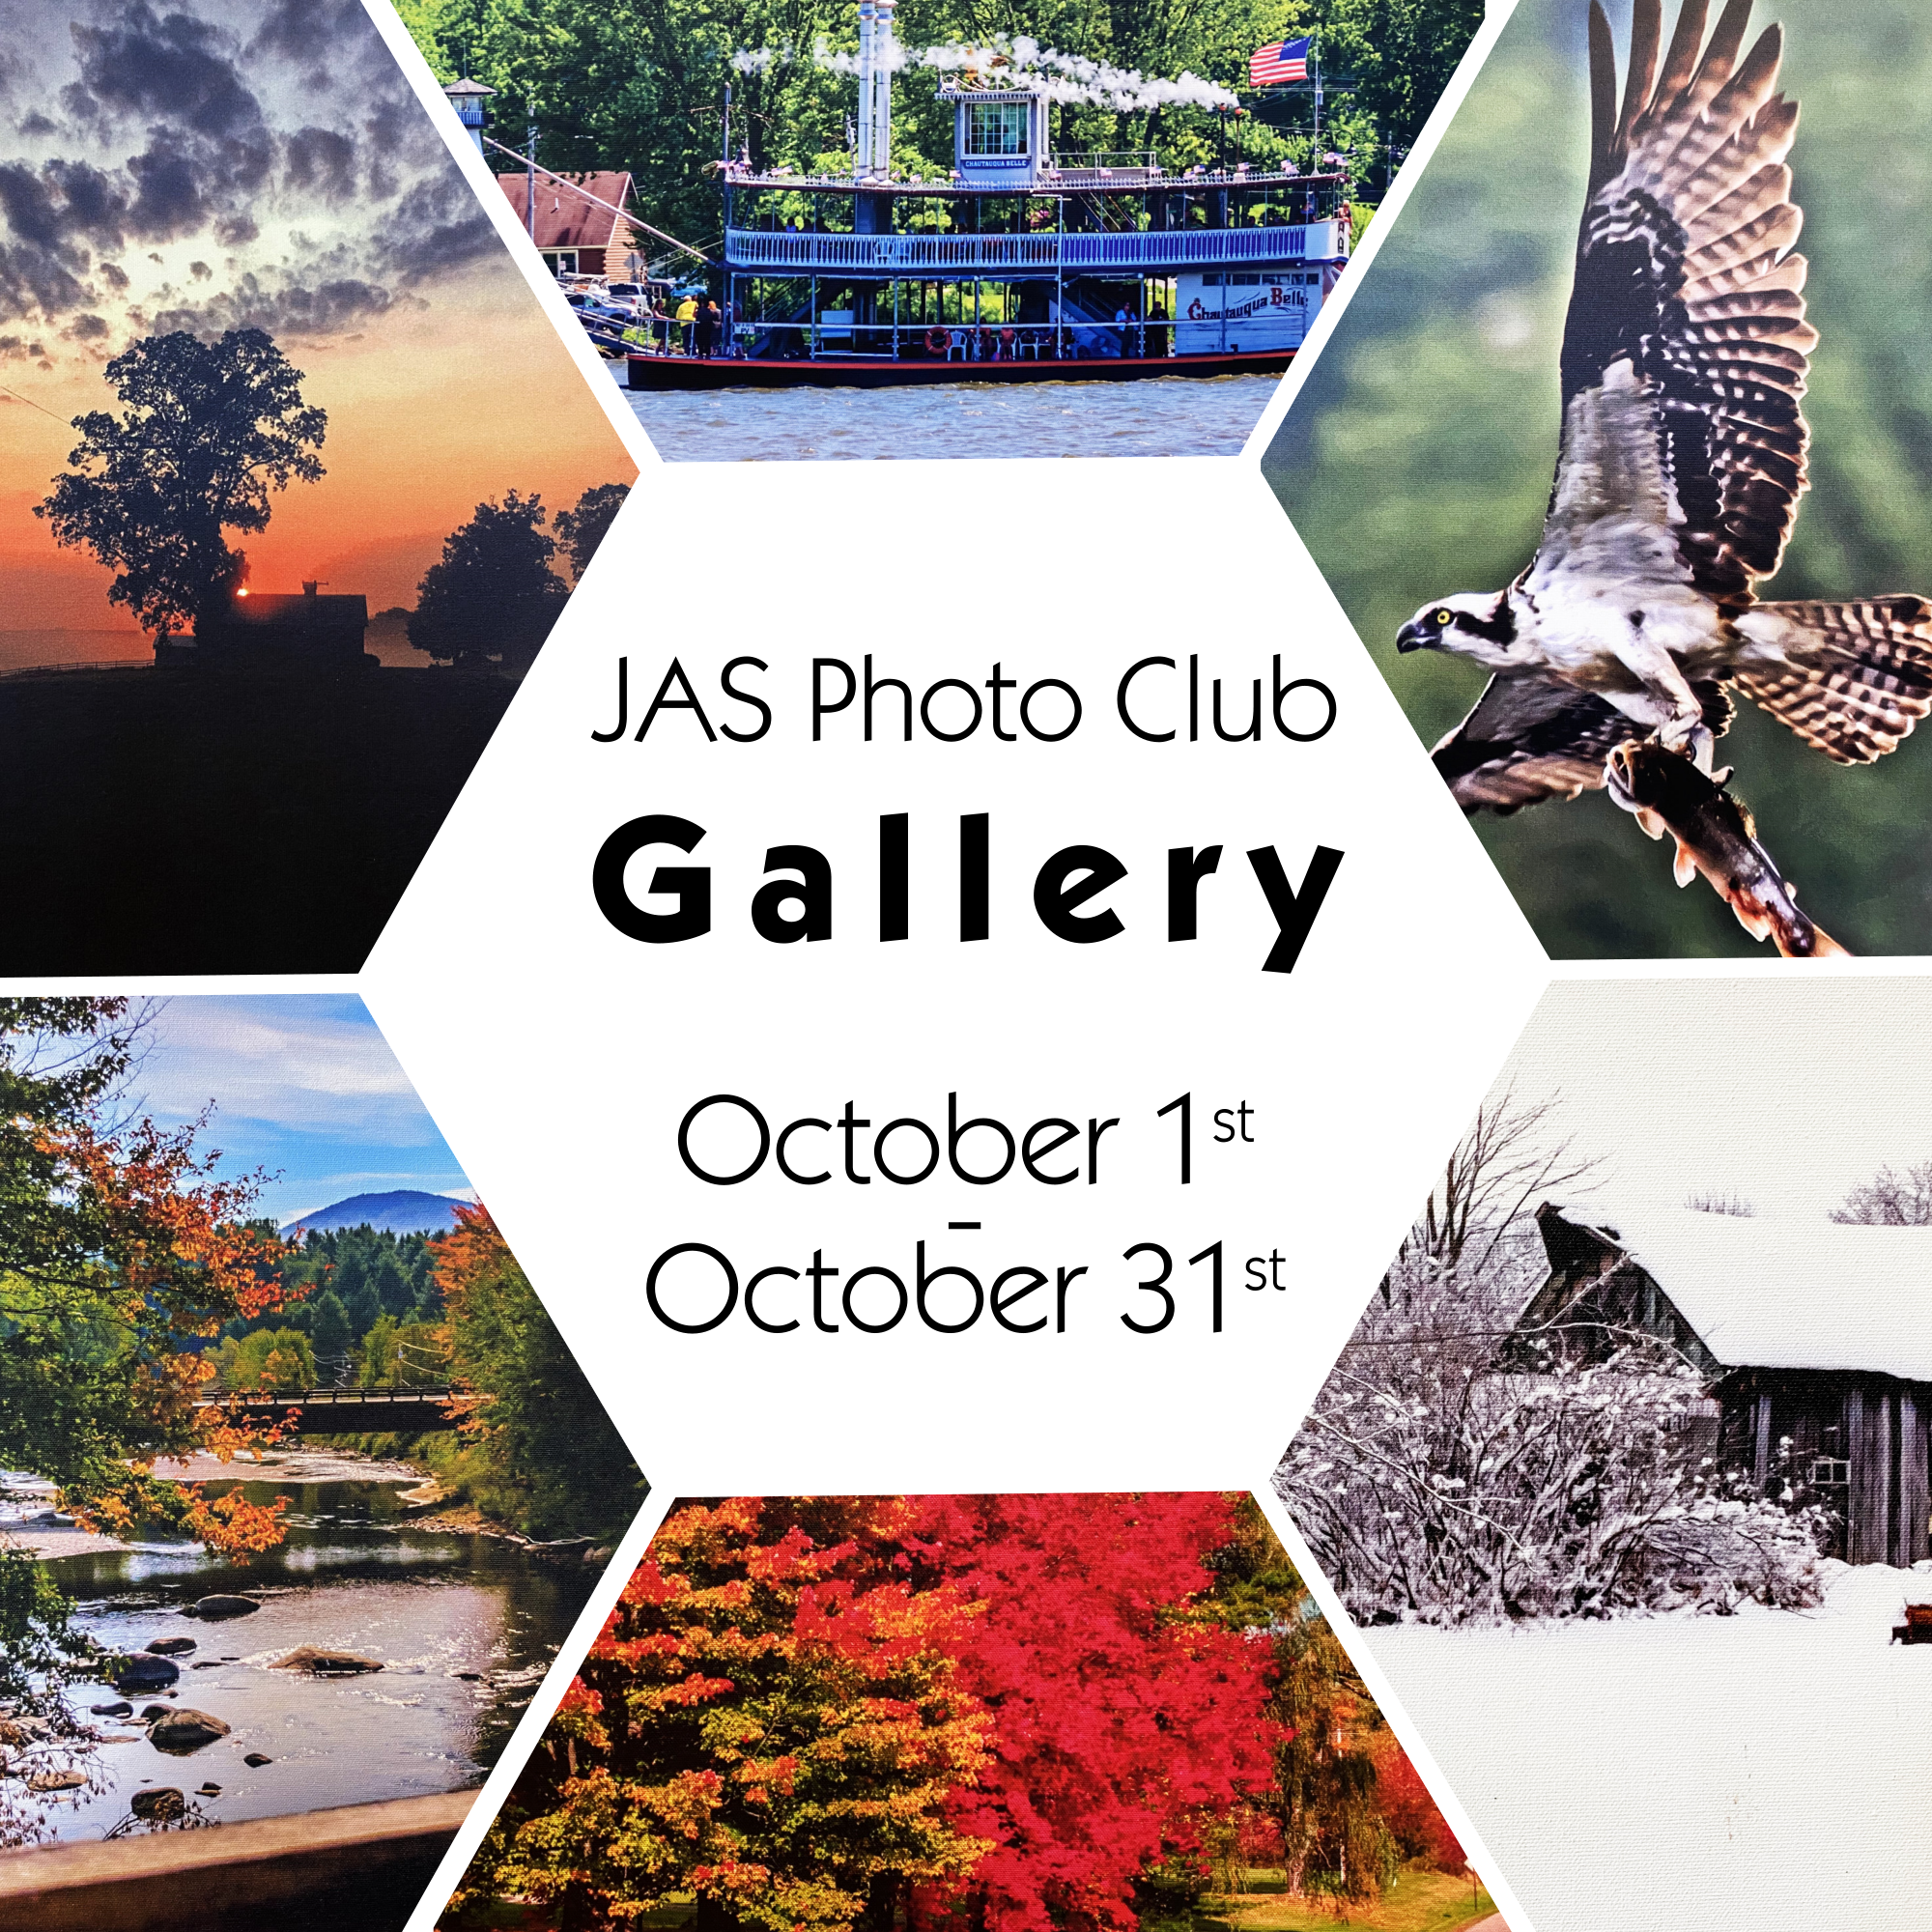 JAS Photo Club Gallery